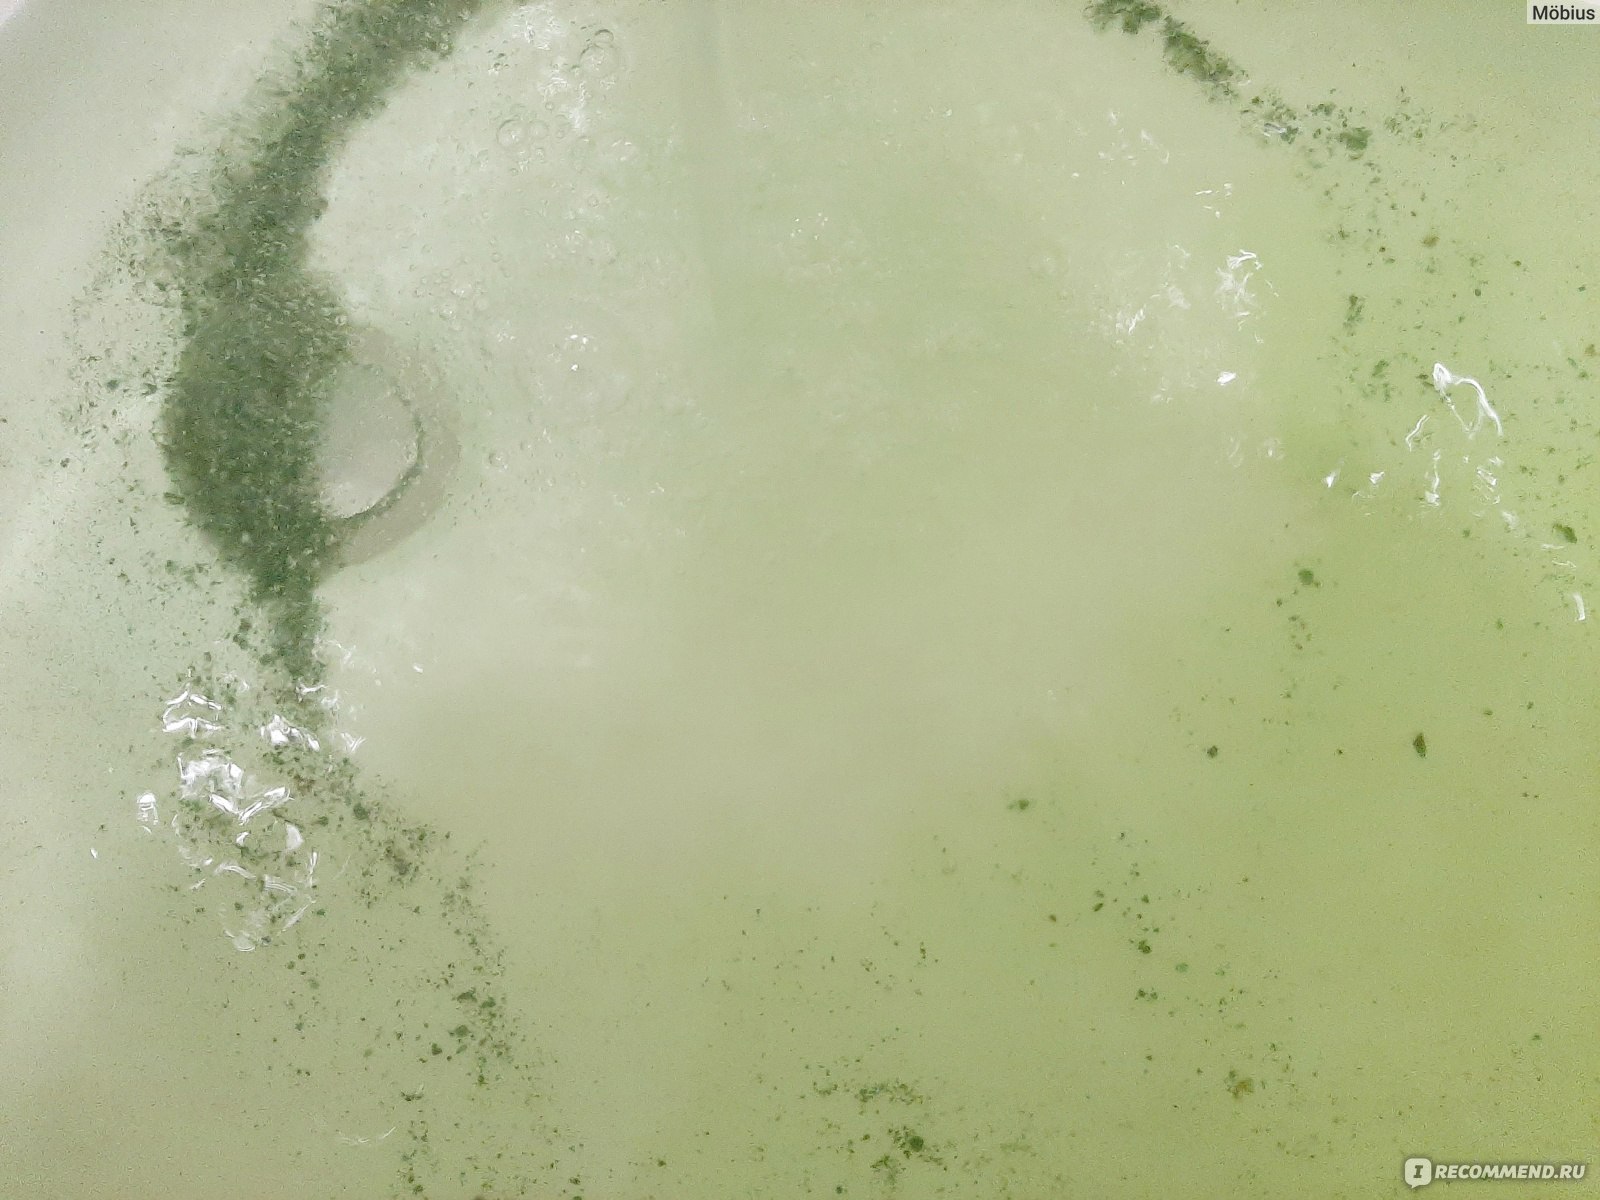 Морская соль для ванн Dr.Aqua ароматная с микроэлементами Череда фото